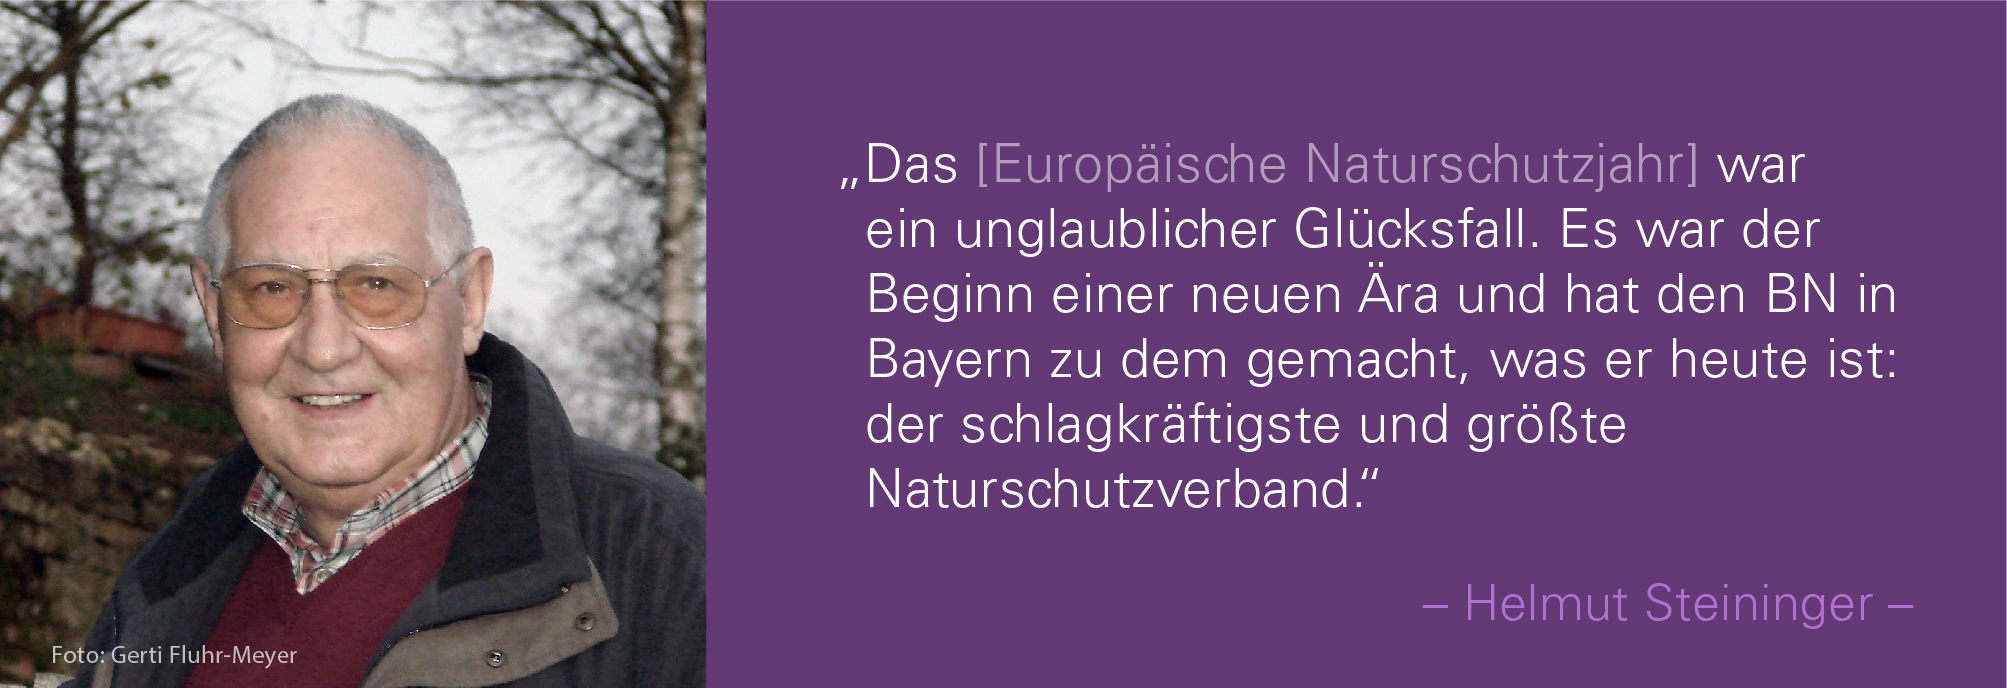 Portraitbild von Helmut Steininger mit seinem Zitat: Das Europäische Naturschutzjahr war ein unglaublicher Glücksfall. Es war der Beginn einer neuen Ära und hat den BN in Bayern zu dem gemacht, was er heute ist: der schlagkräftigste und größte Naturschutzverband.